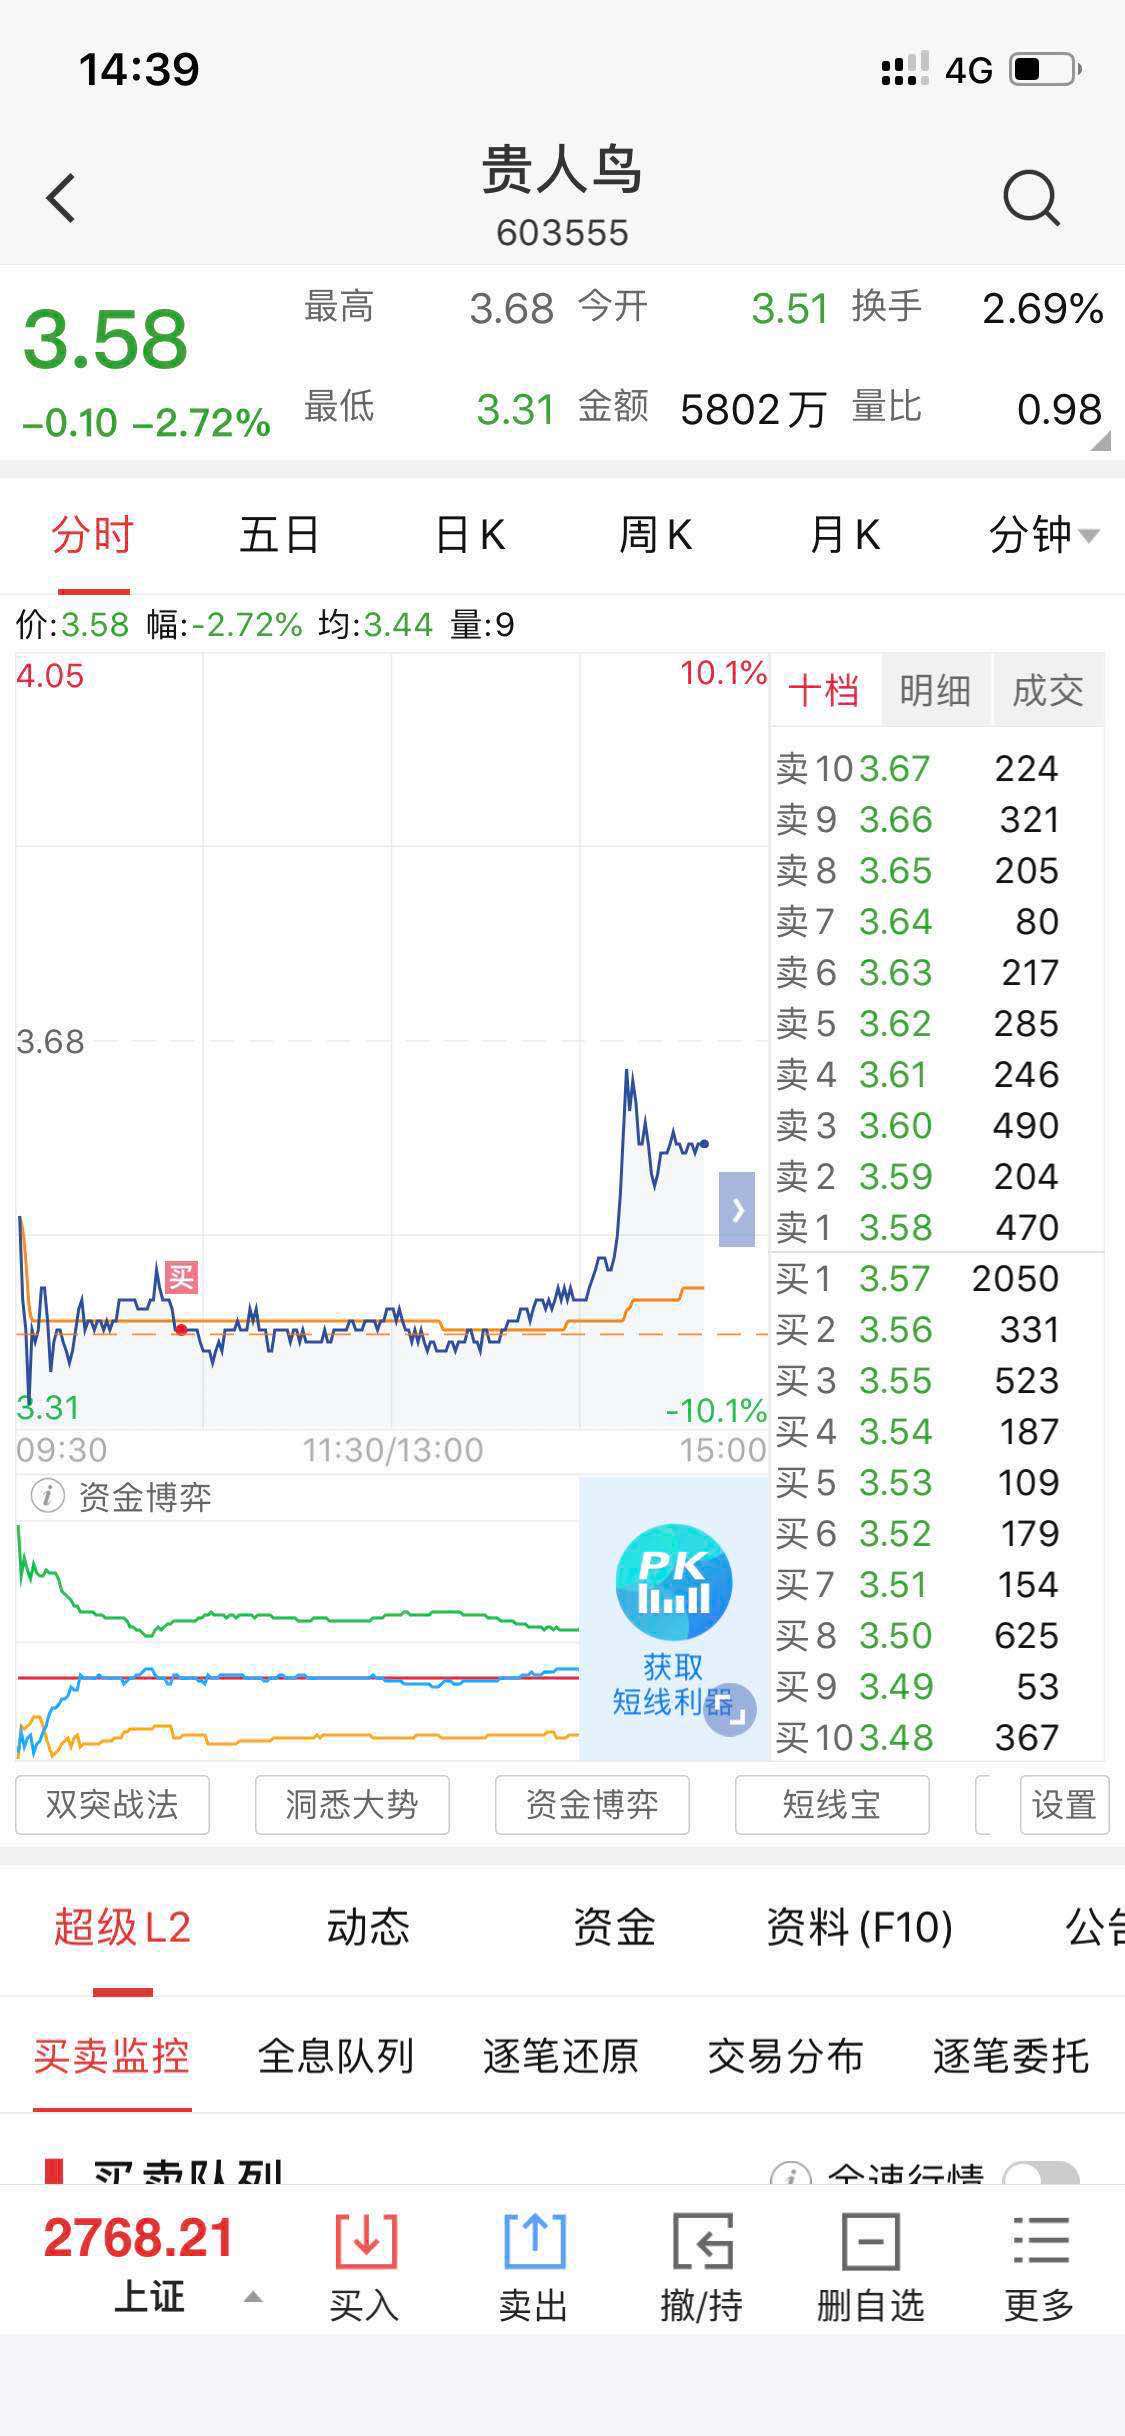 贵人鸟 3.49 -0.07(-1.97%) _ 股票行情 _ 东方财富网